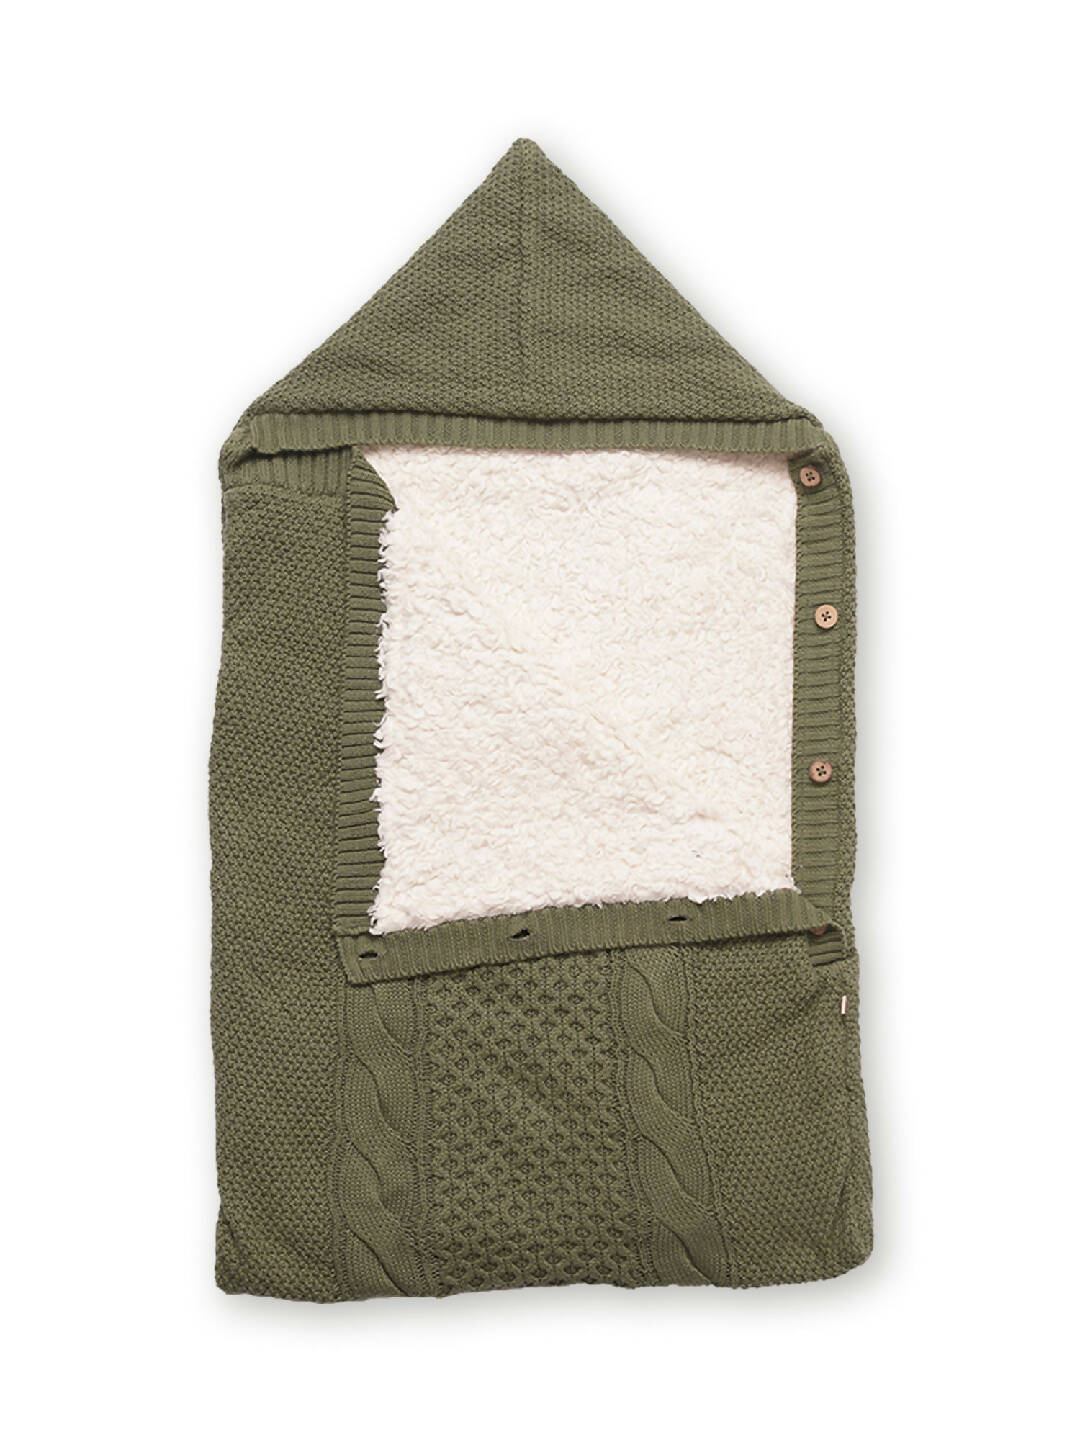 Wintergreen Cocoon Baby Blanket (1)